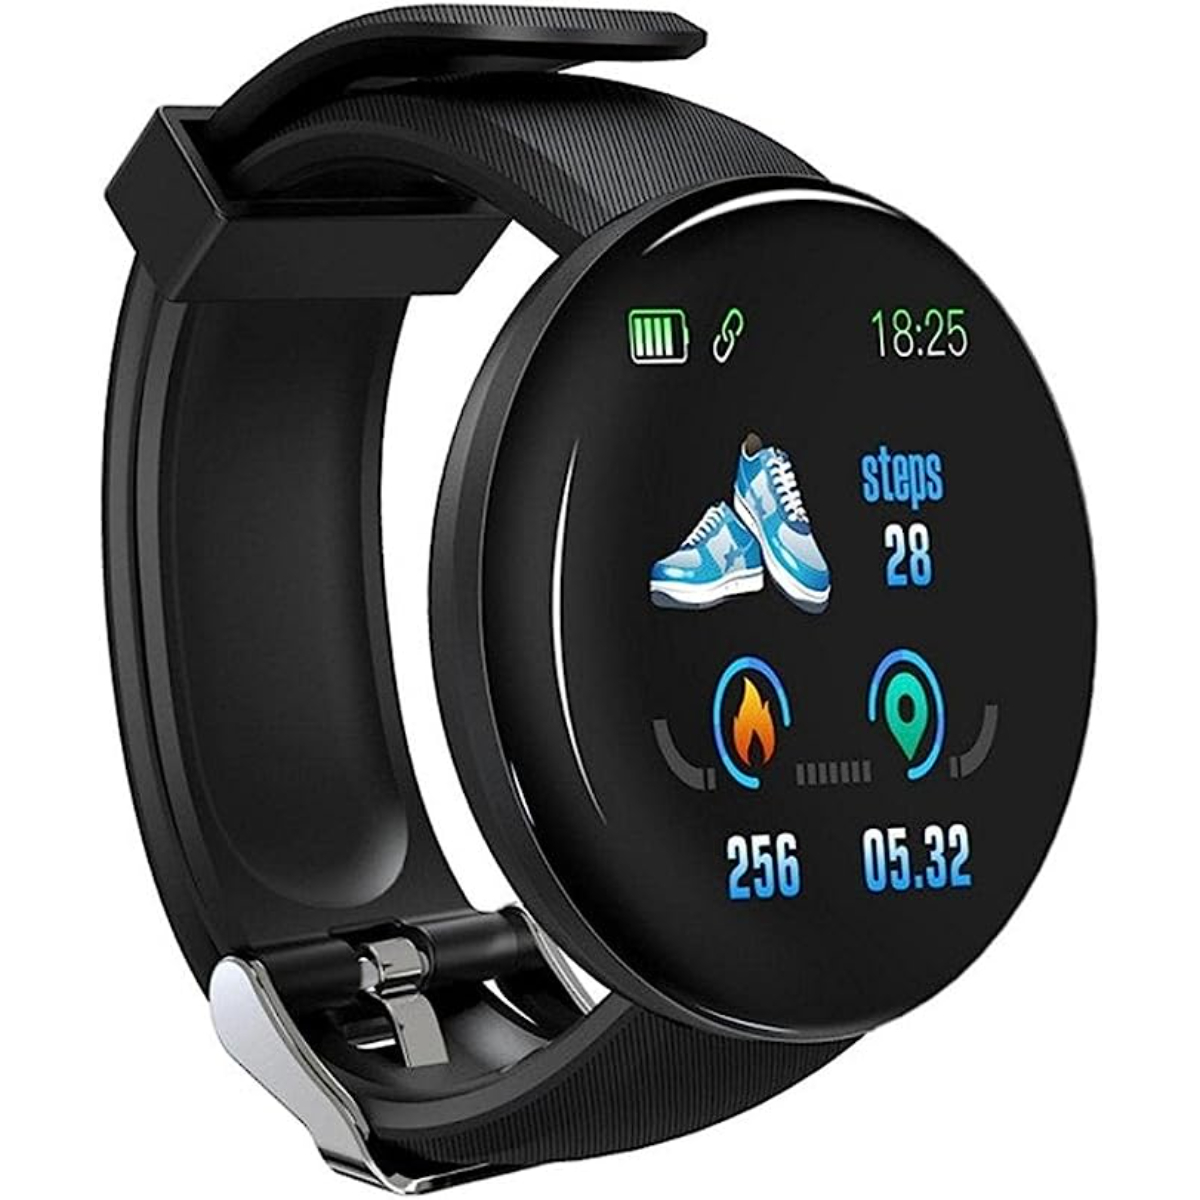 Reloj Smartwatch Klack Kd18 Con Frecuencia Cardíaca, Presión Arterial Y Notificaciones - negro - 